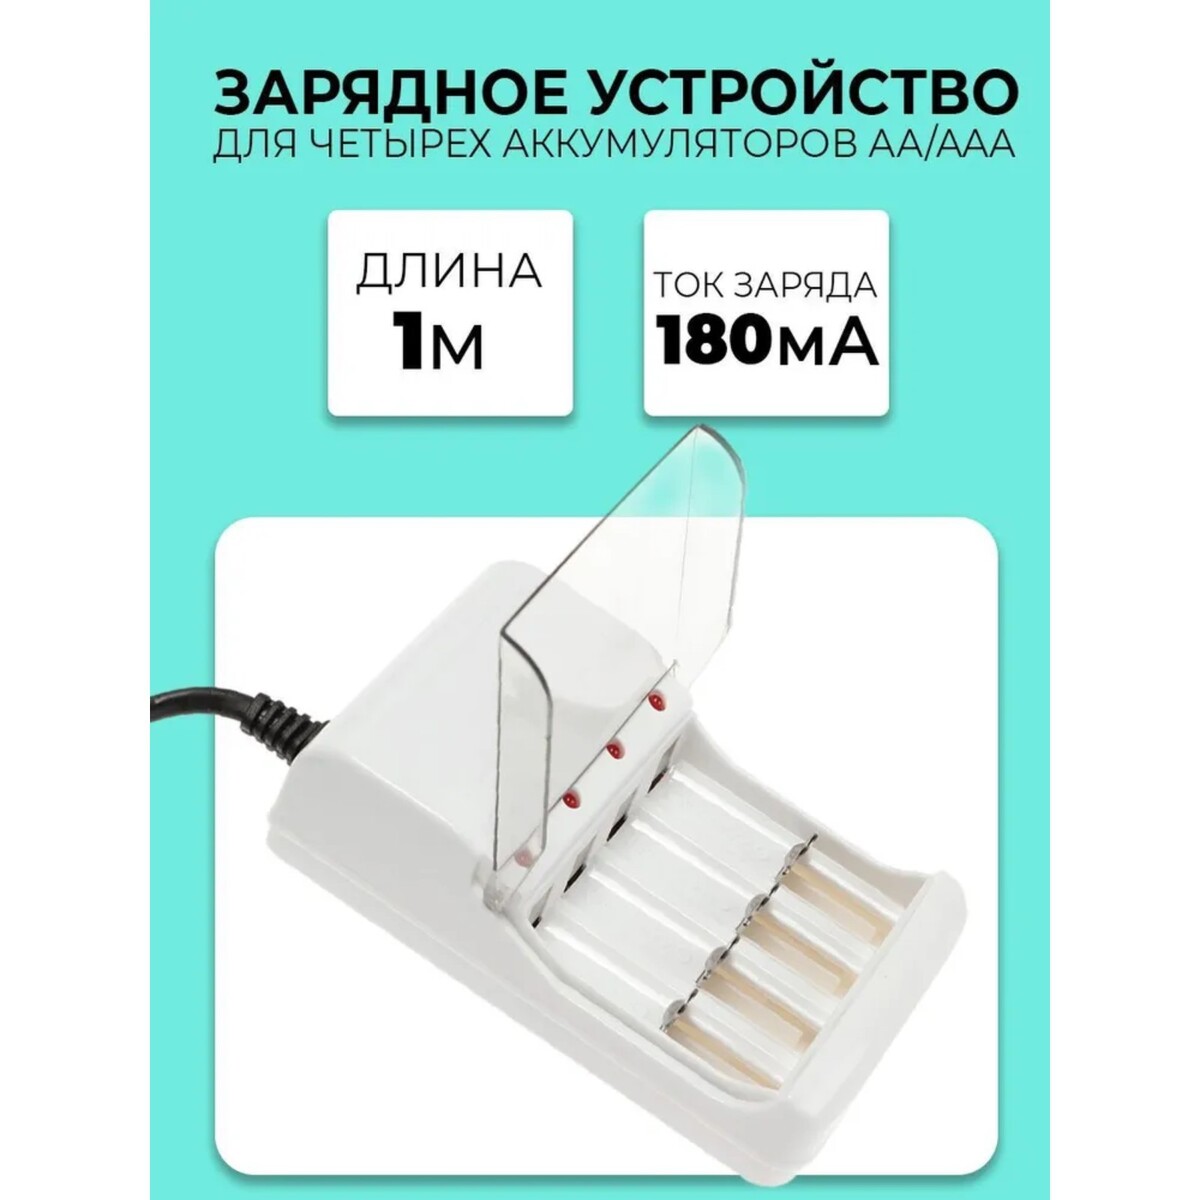 Зарядное устройство для четырех аккумуляторов аа или ааа chr-56, 1 м,ток заряда 180 ма,белое